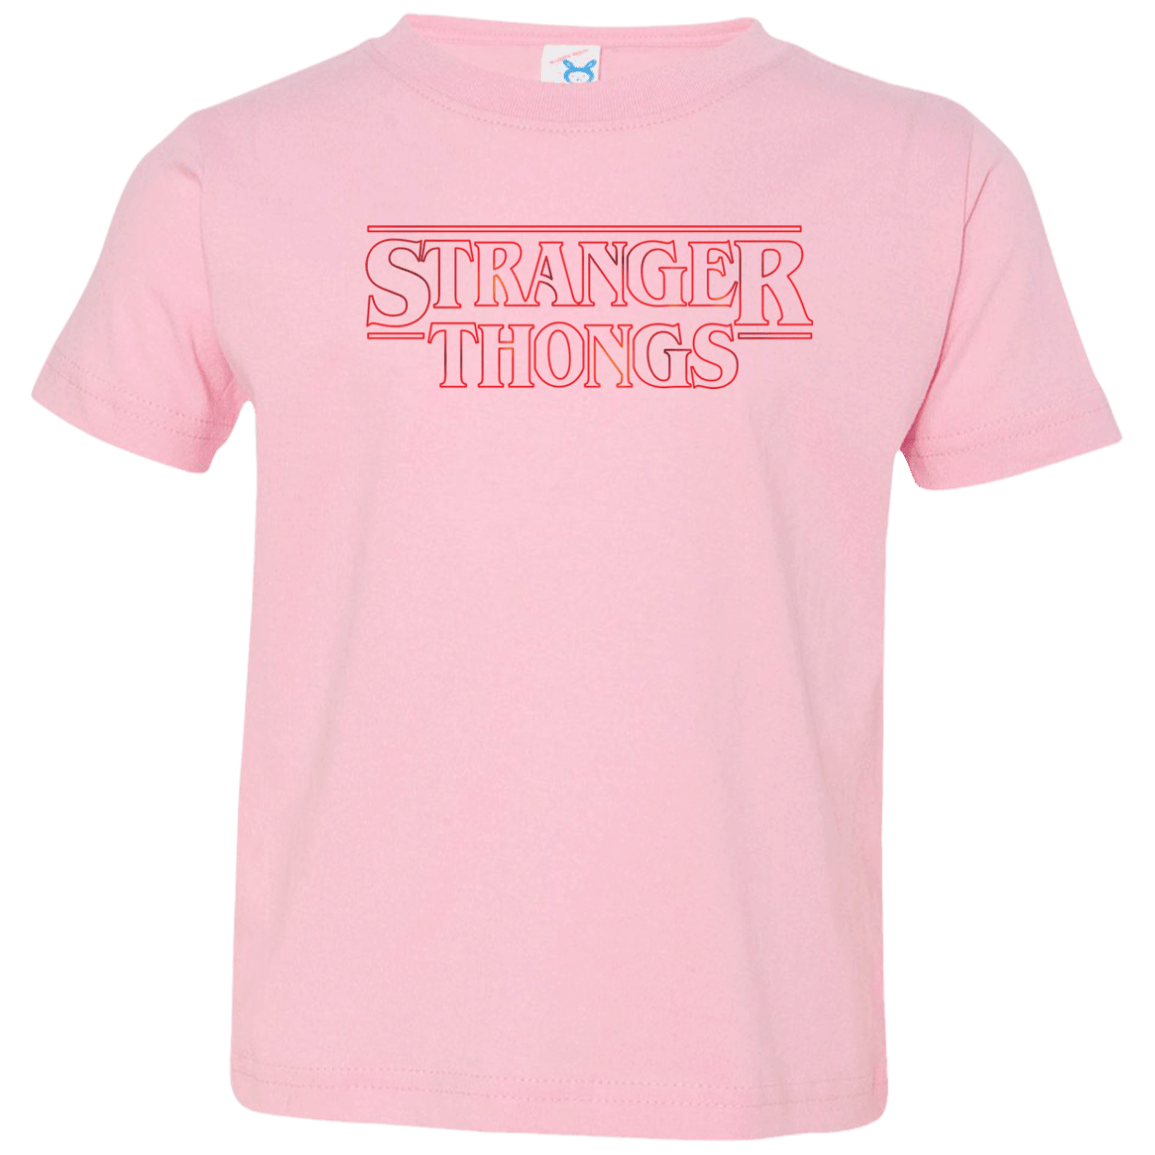 Stranger Thongs Toddler Premium T-Shirt